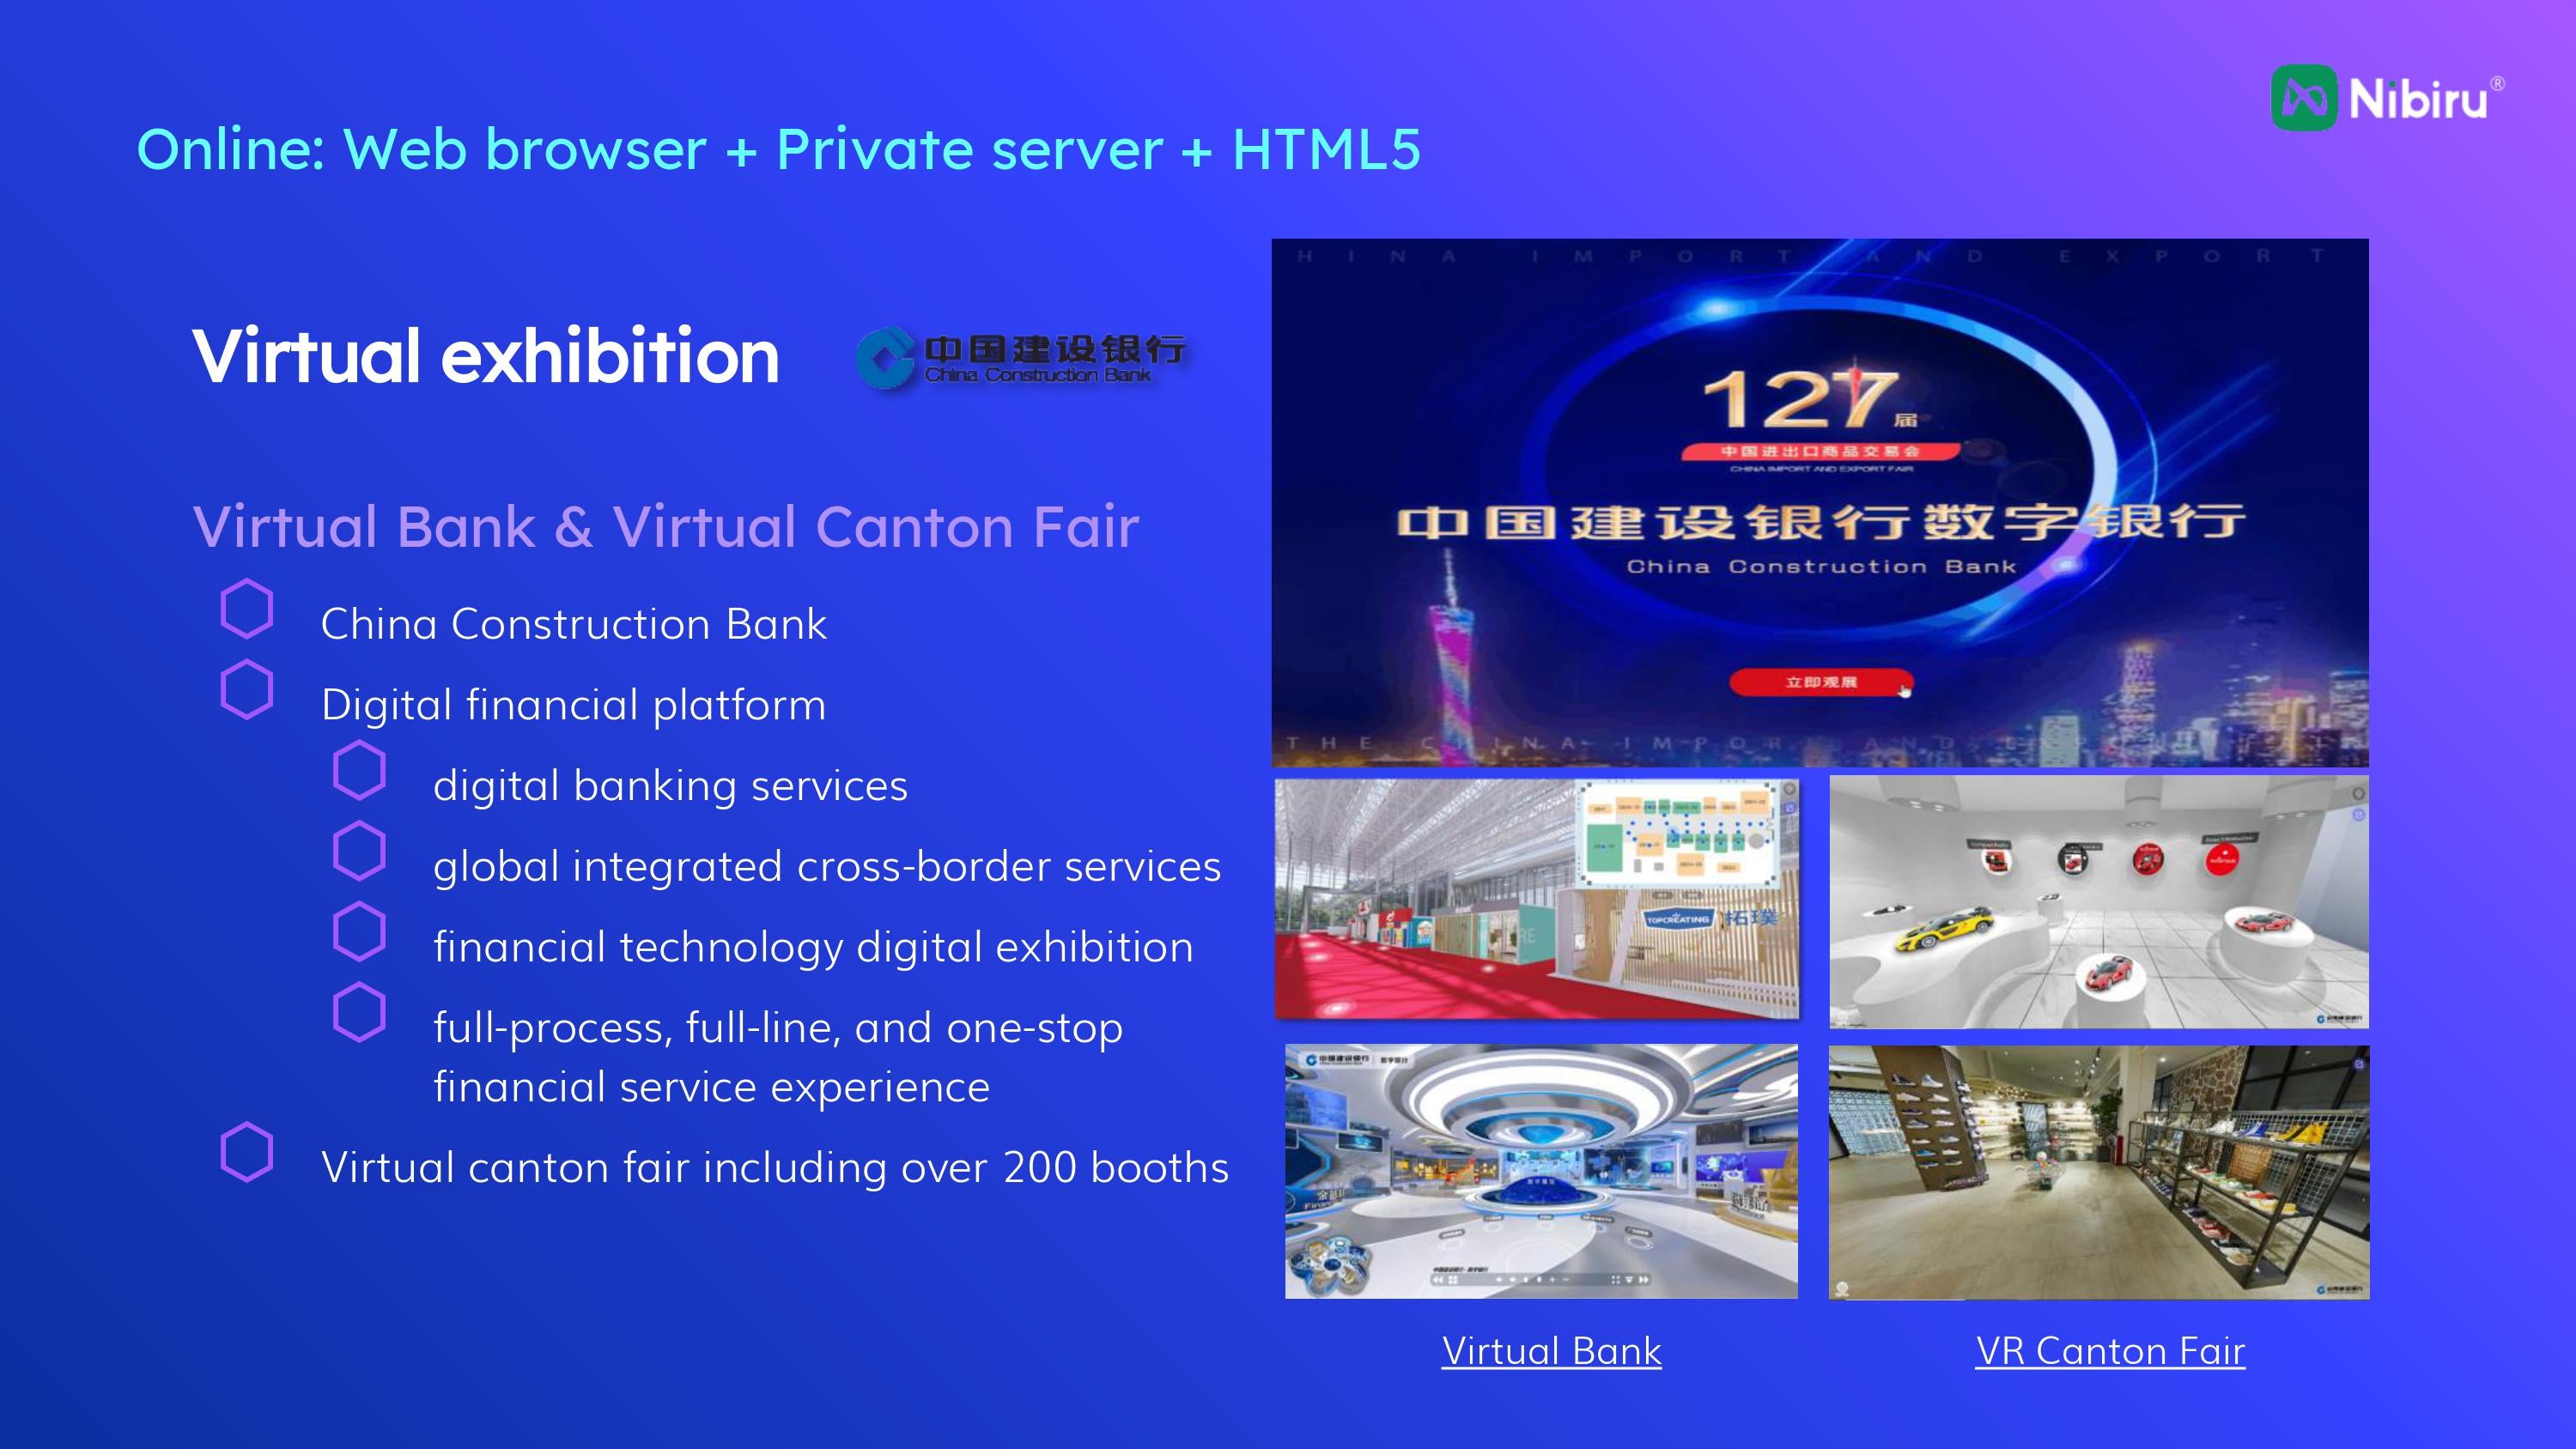 Virtual Exhibition Project of Nibiru Creator, Virtual Bank & Virtual Canton Fair, China Construction Bank